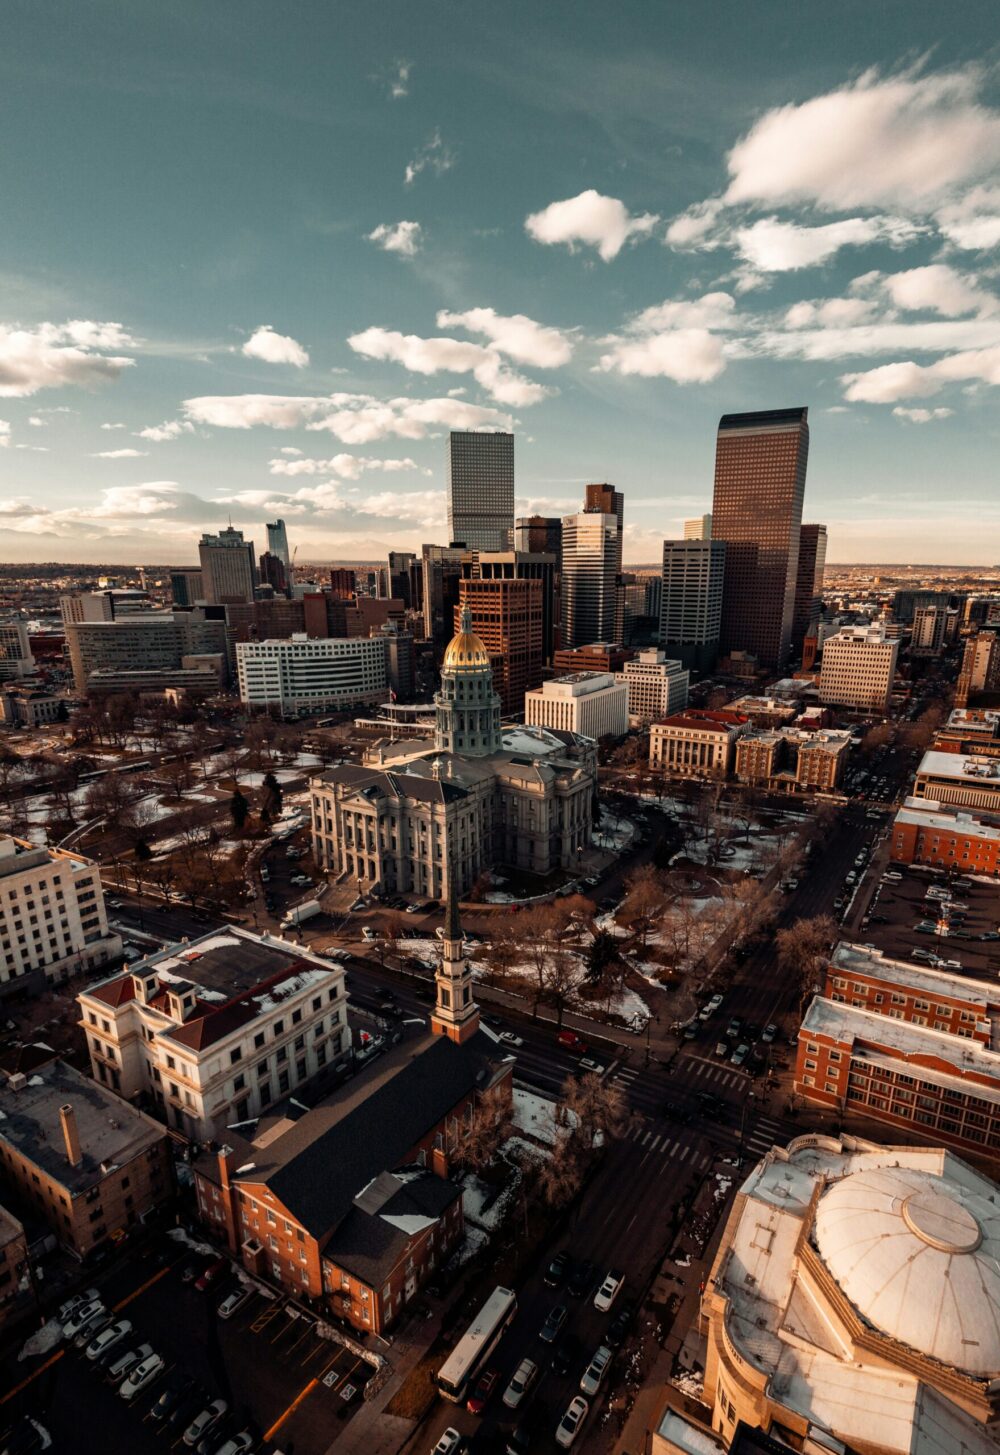 Birdseye view of Denver skyline